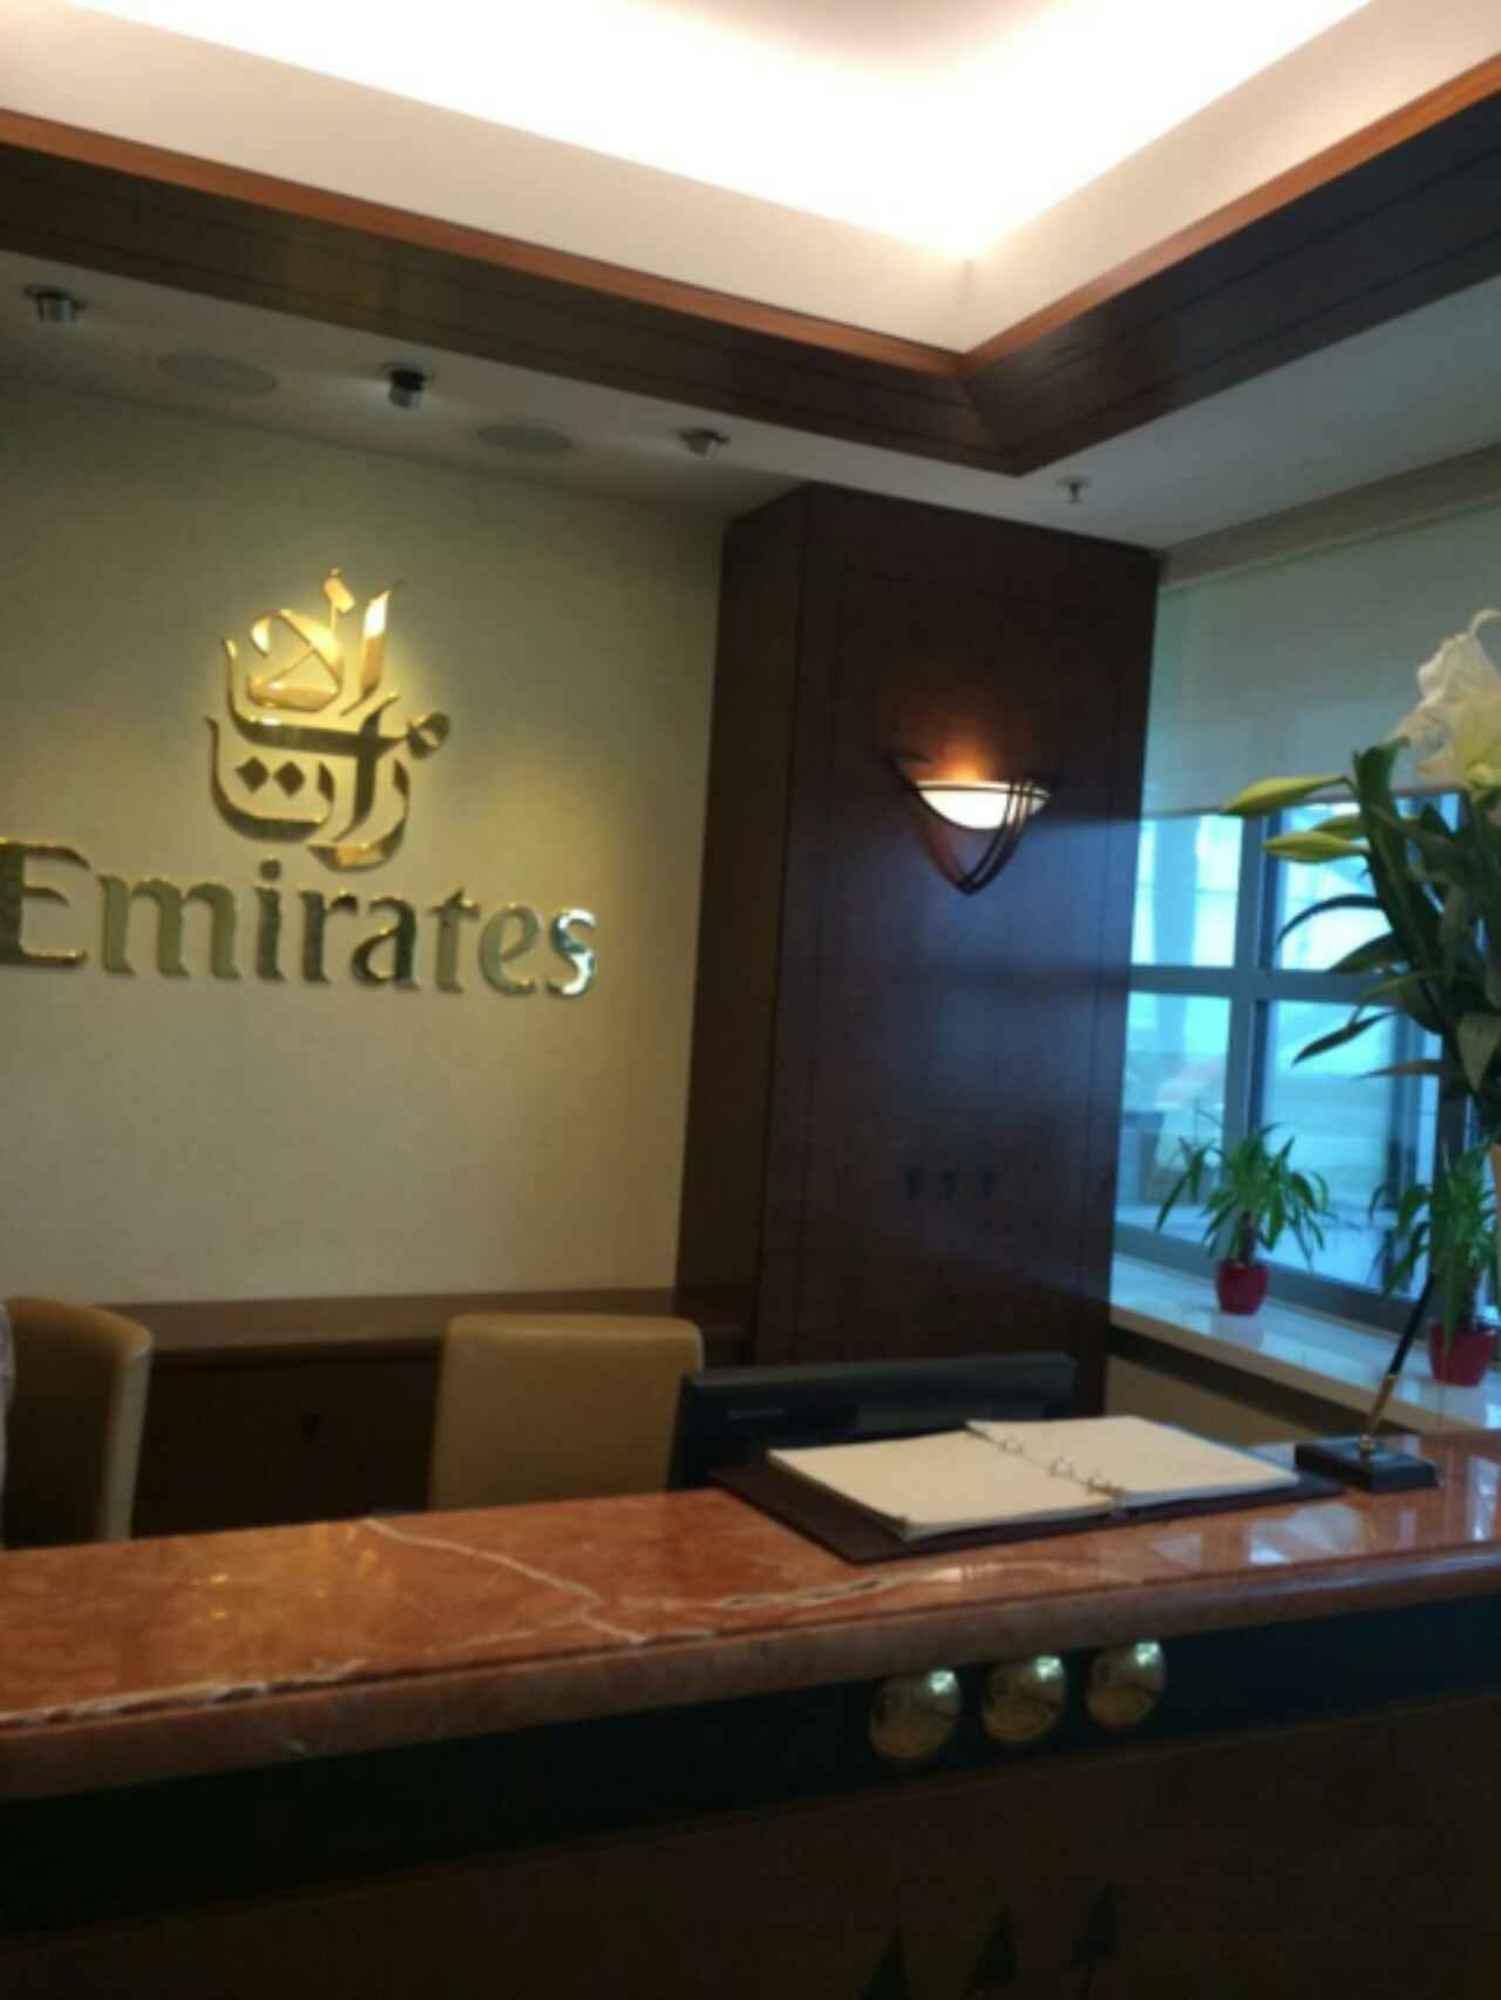 The Emirates Lounge image 2 of 3